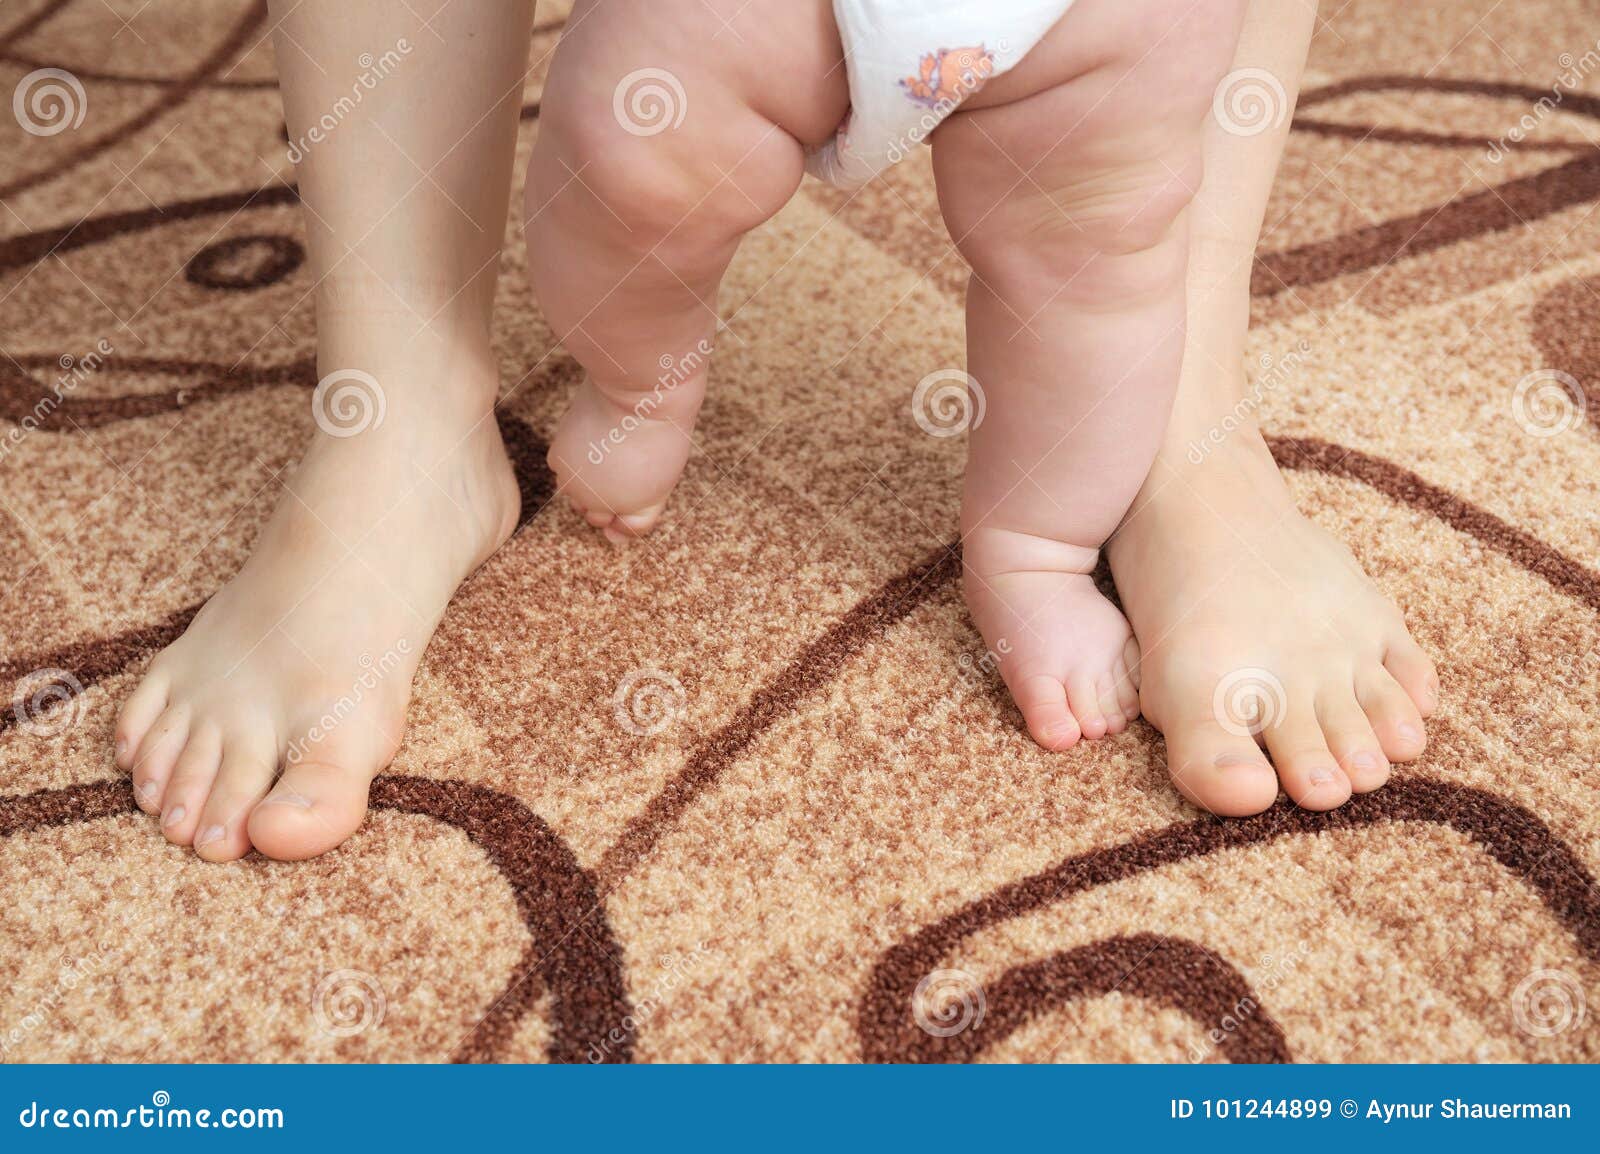 У мамы есть ноги. Ножки шагающего малыша. Ребенок под ногами мамы. Маленькие ножки шагают. Ребенок под ногой матери.